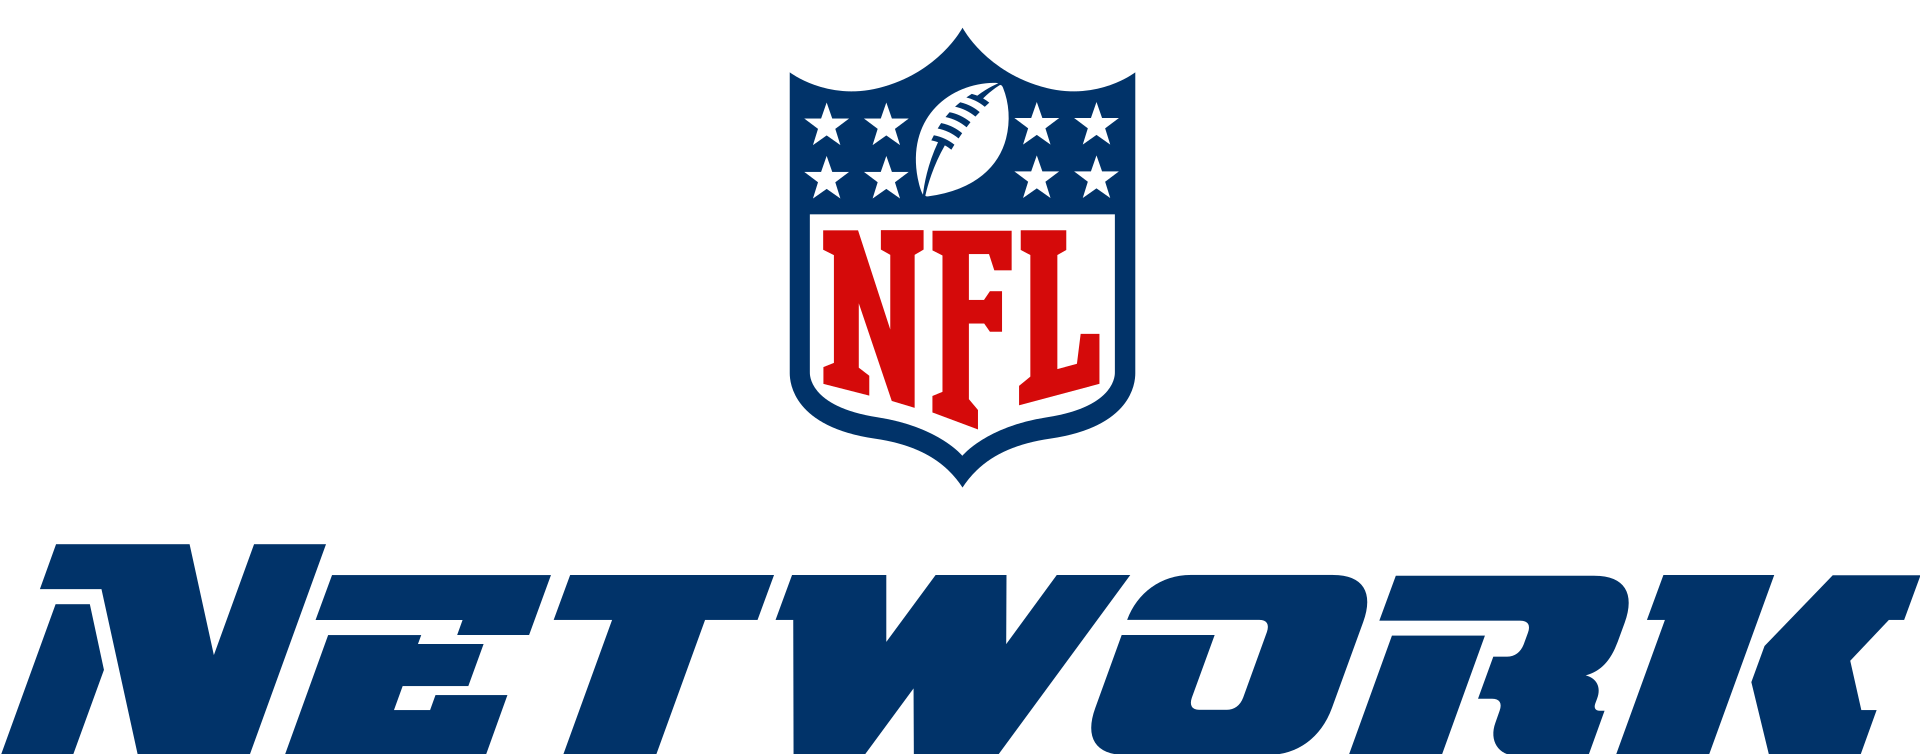 NFL_Network_logo.svg